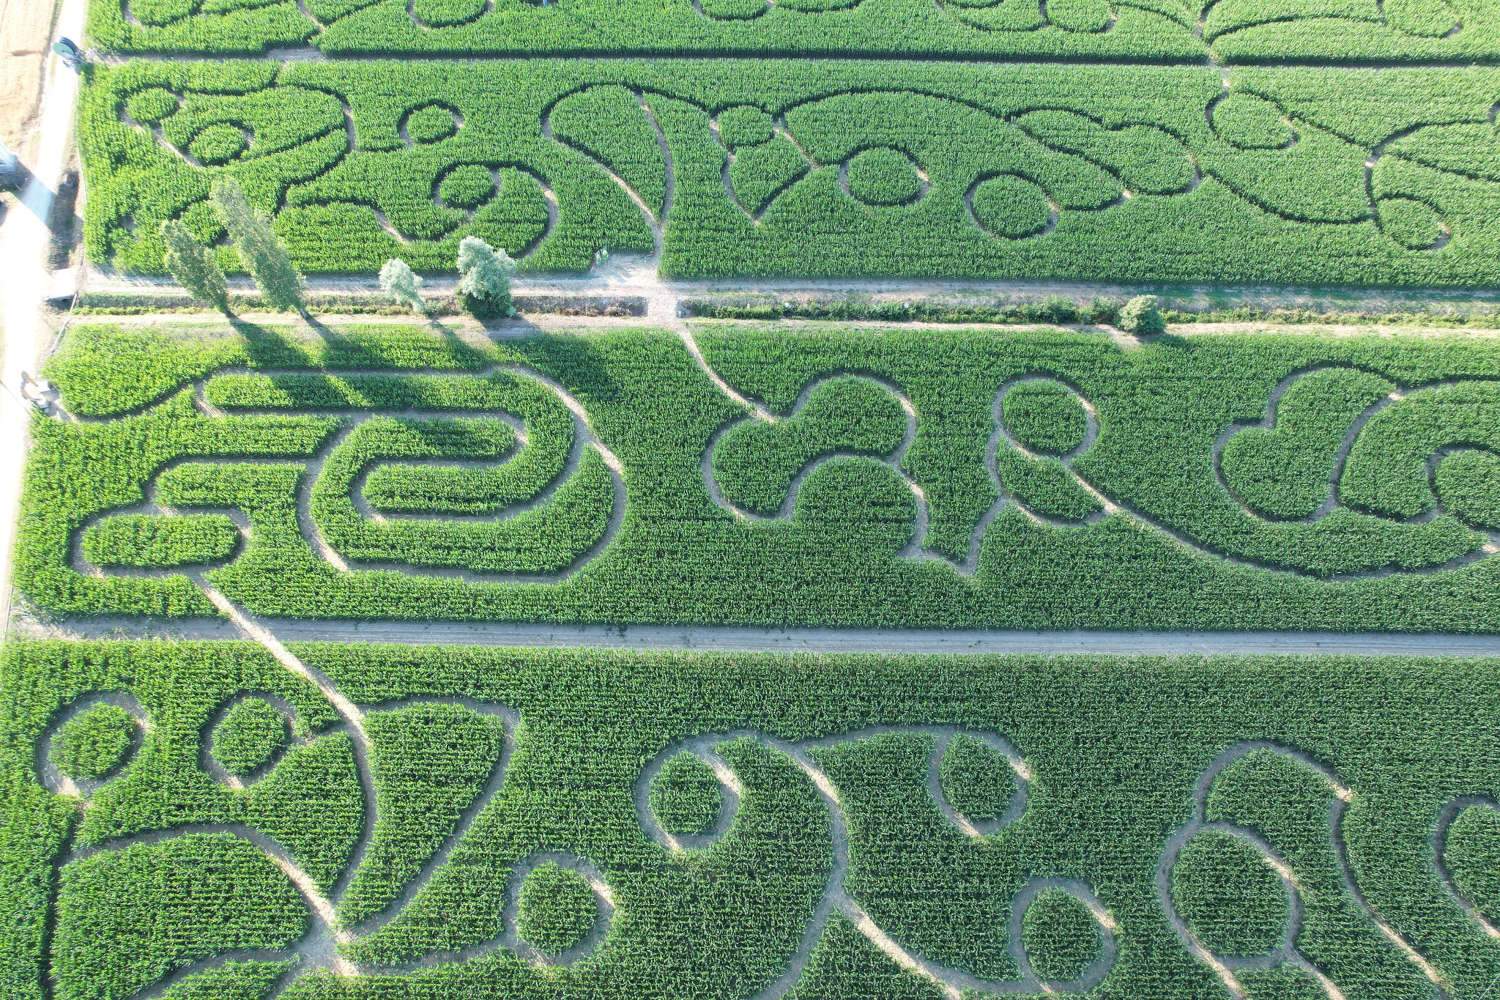 Ein Maislabyrinth, das sich jedes Jahr verändert: das Labyrinth von Hort in Le Marche